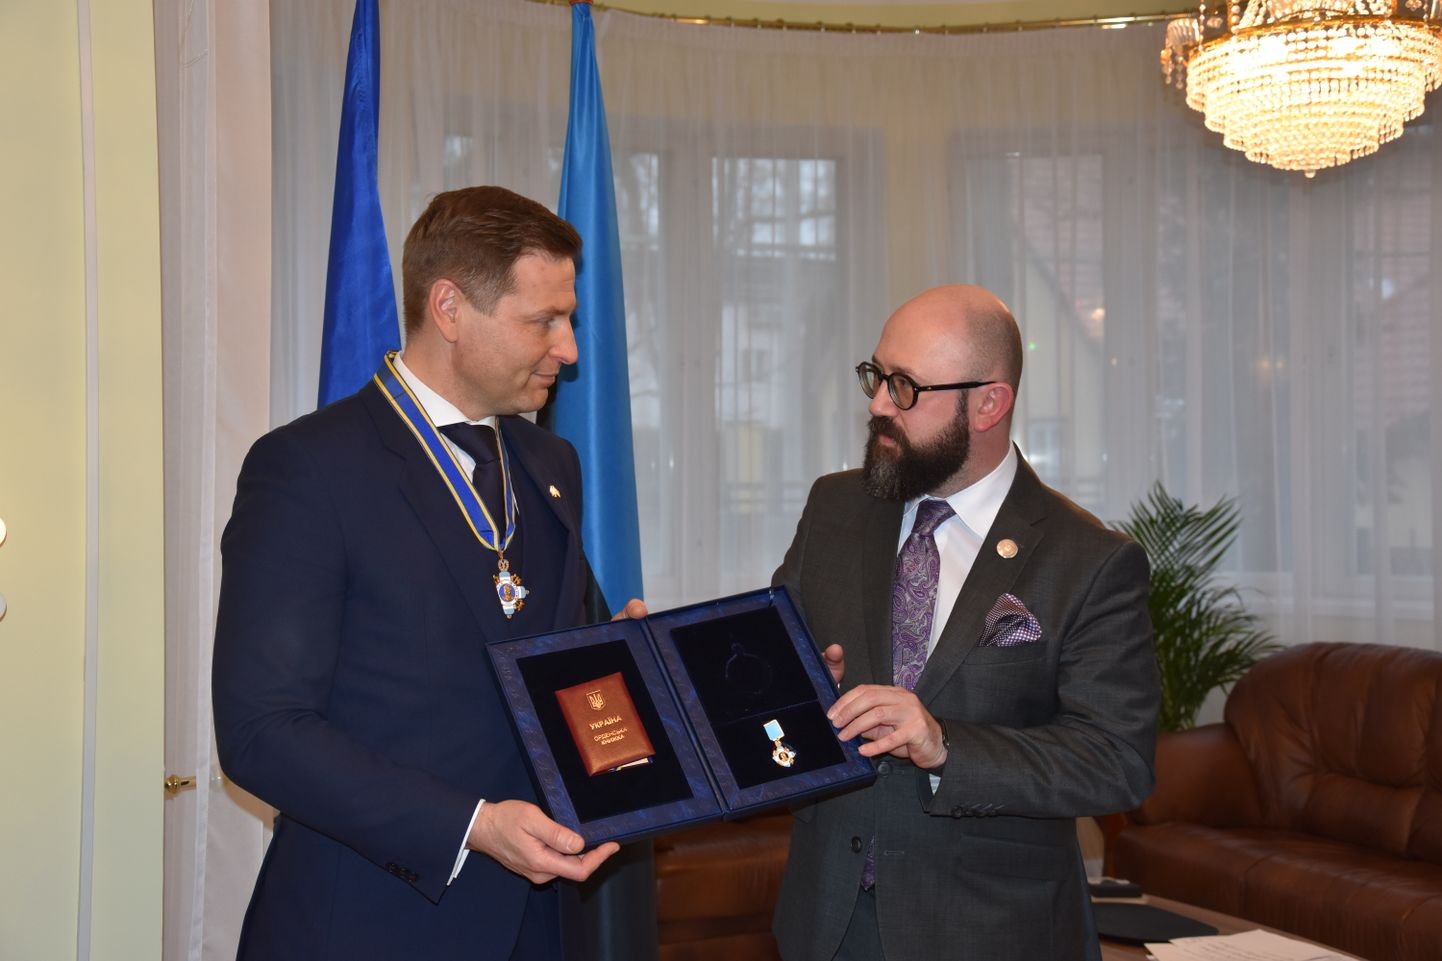 Орден Ханно Певкуру вручил посол Украины в Эстонии Максим Кононенко.